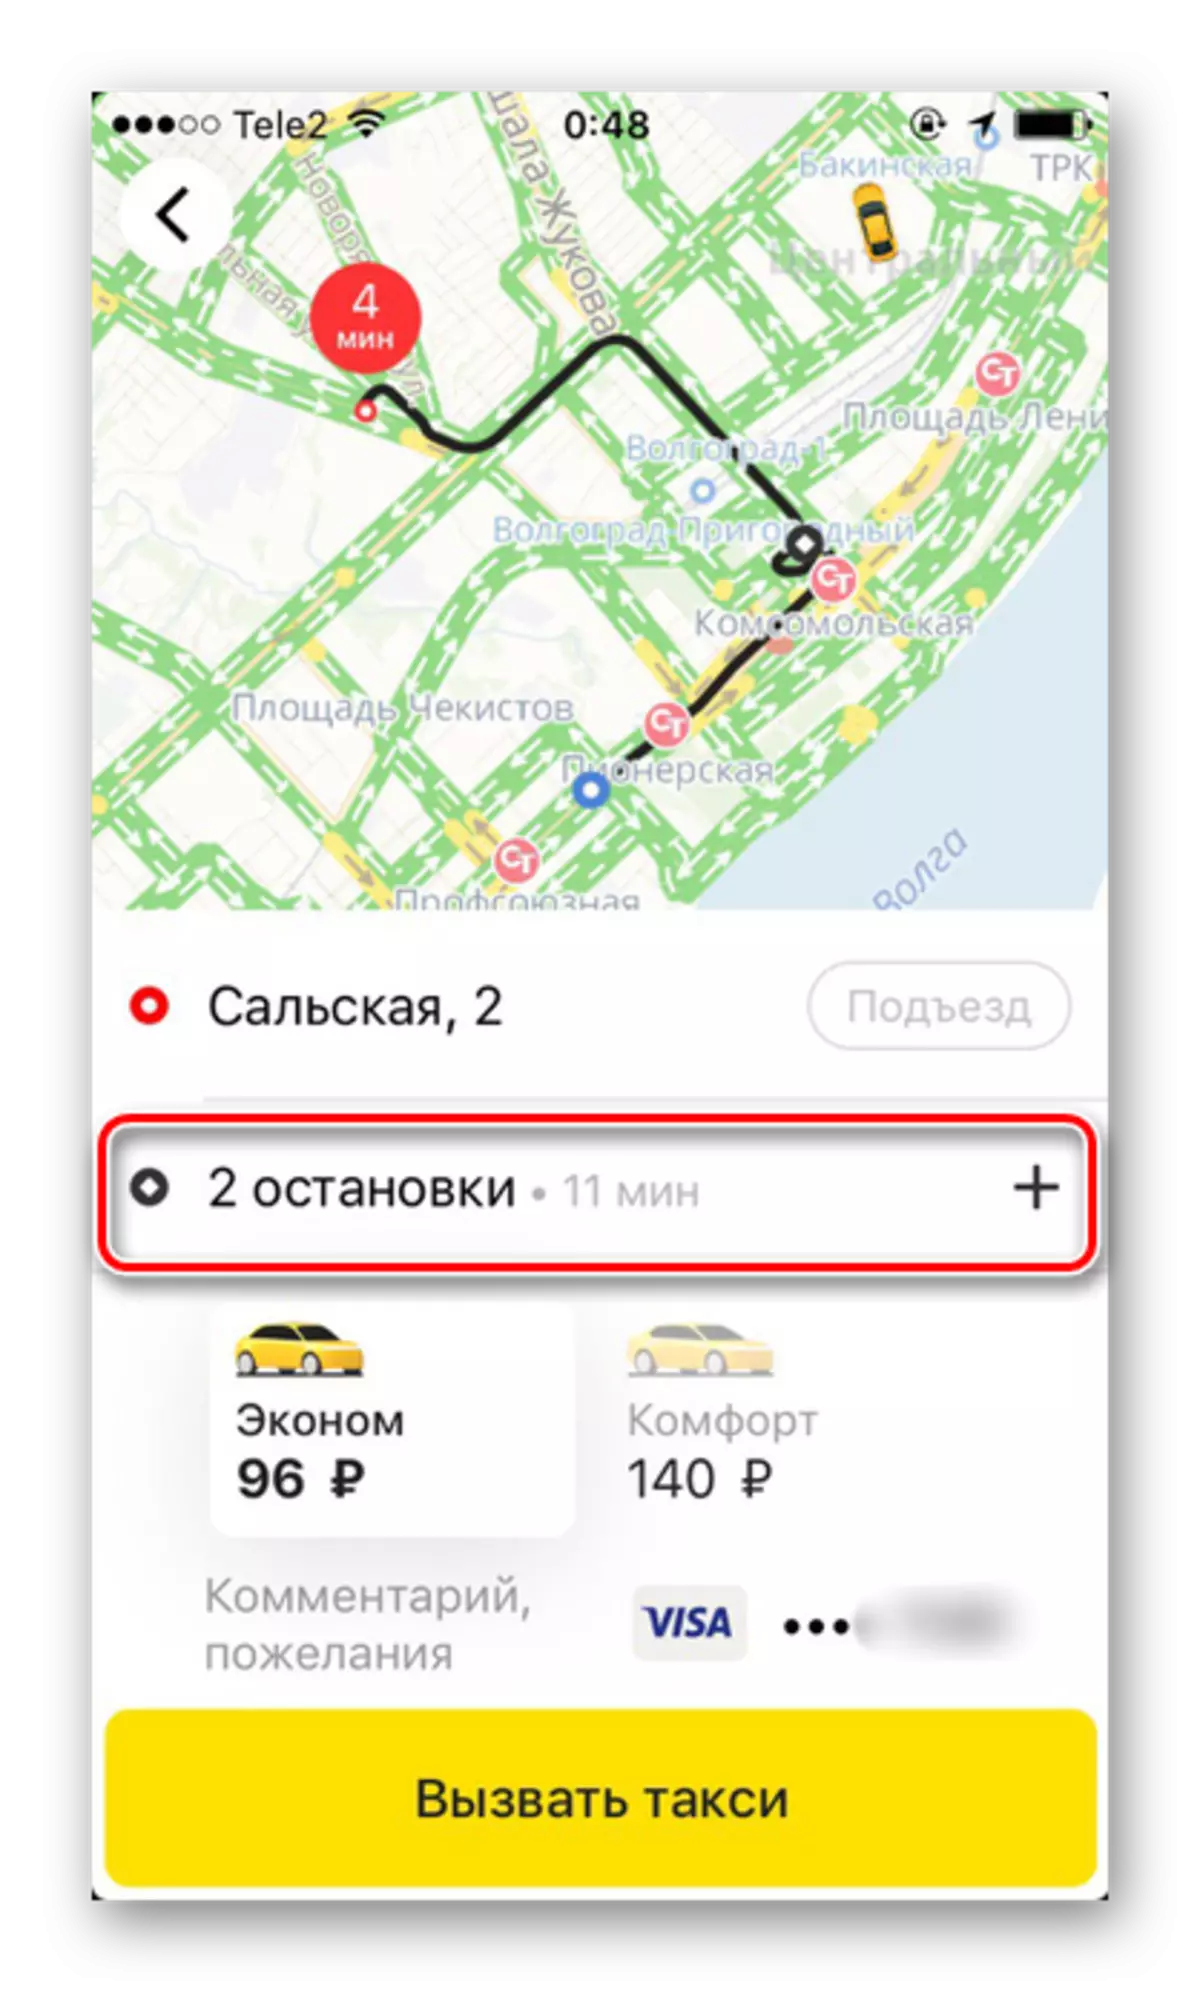 En kompleks rute med flere stopp når du bestiller en taxi i Yandex.Taxi-applikasjonen på iPhone